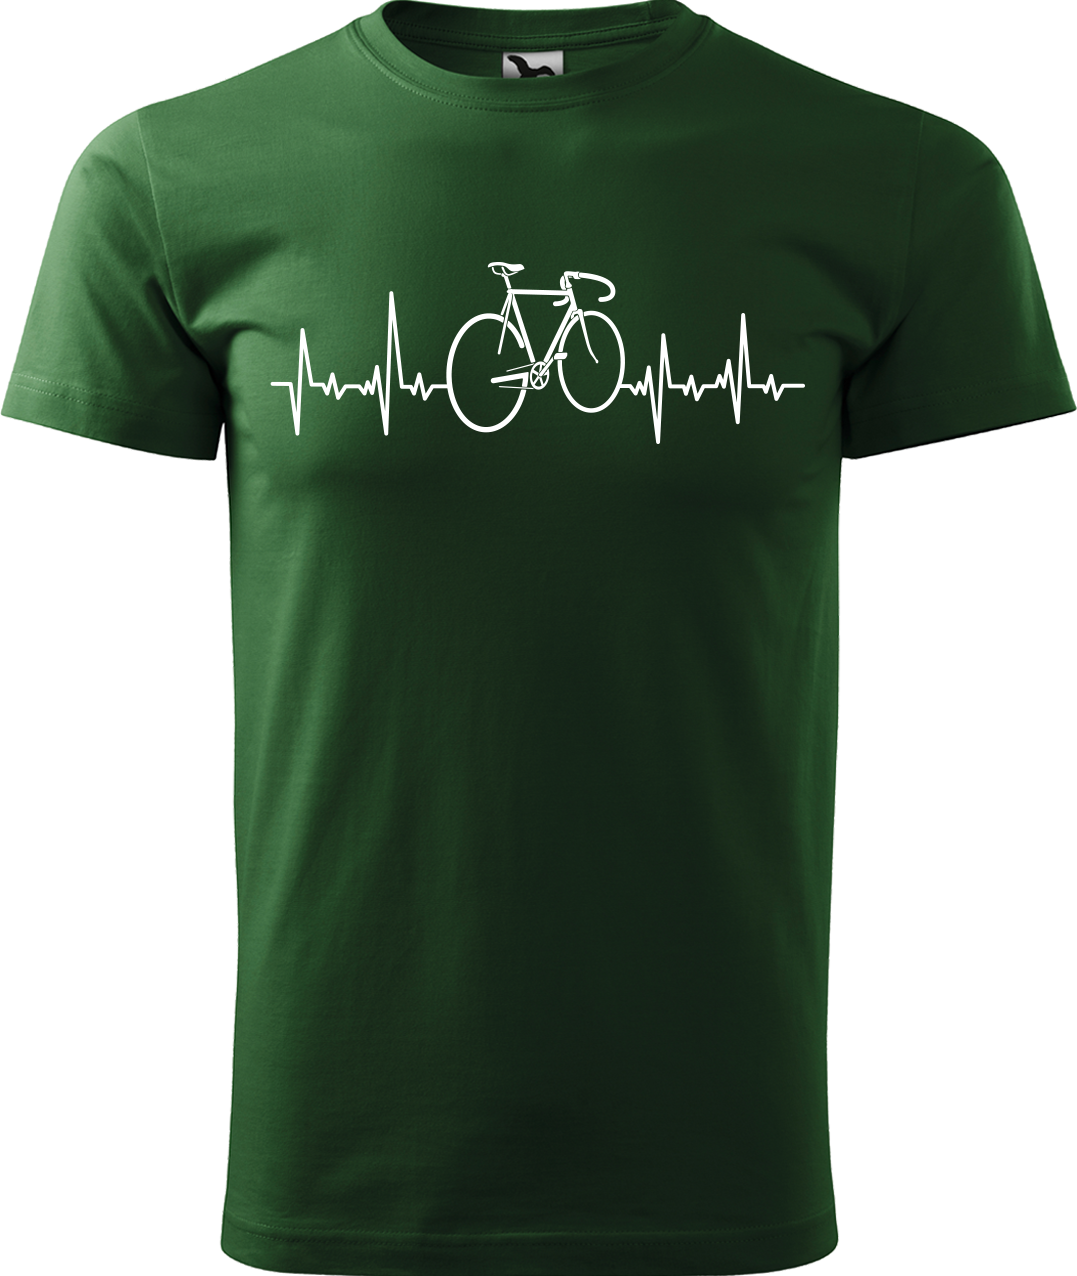 Pánské tričko s kolem - Cyklistův kardiogram Velikost: L, Barva: Lahvově zelená (06)